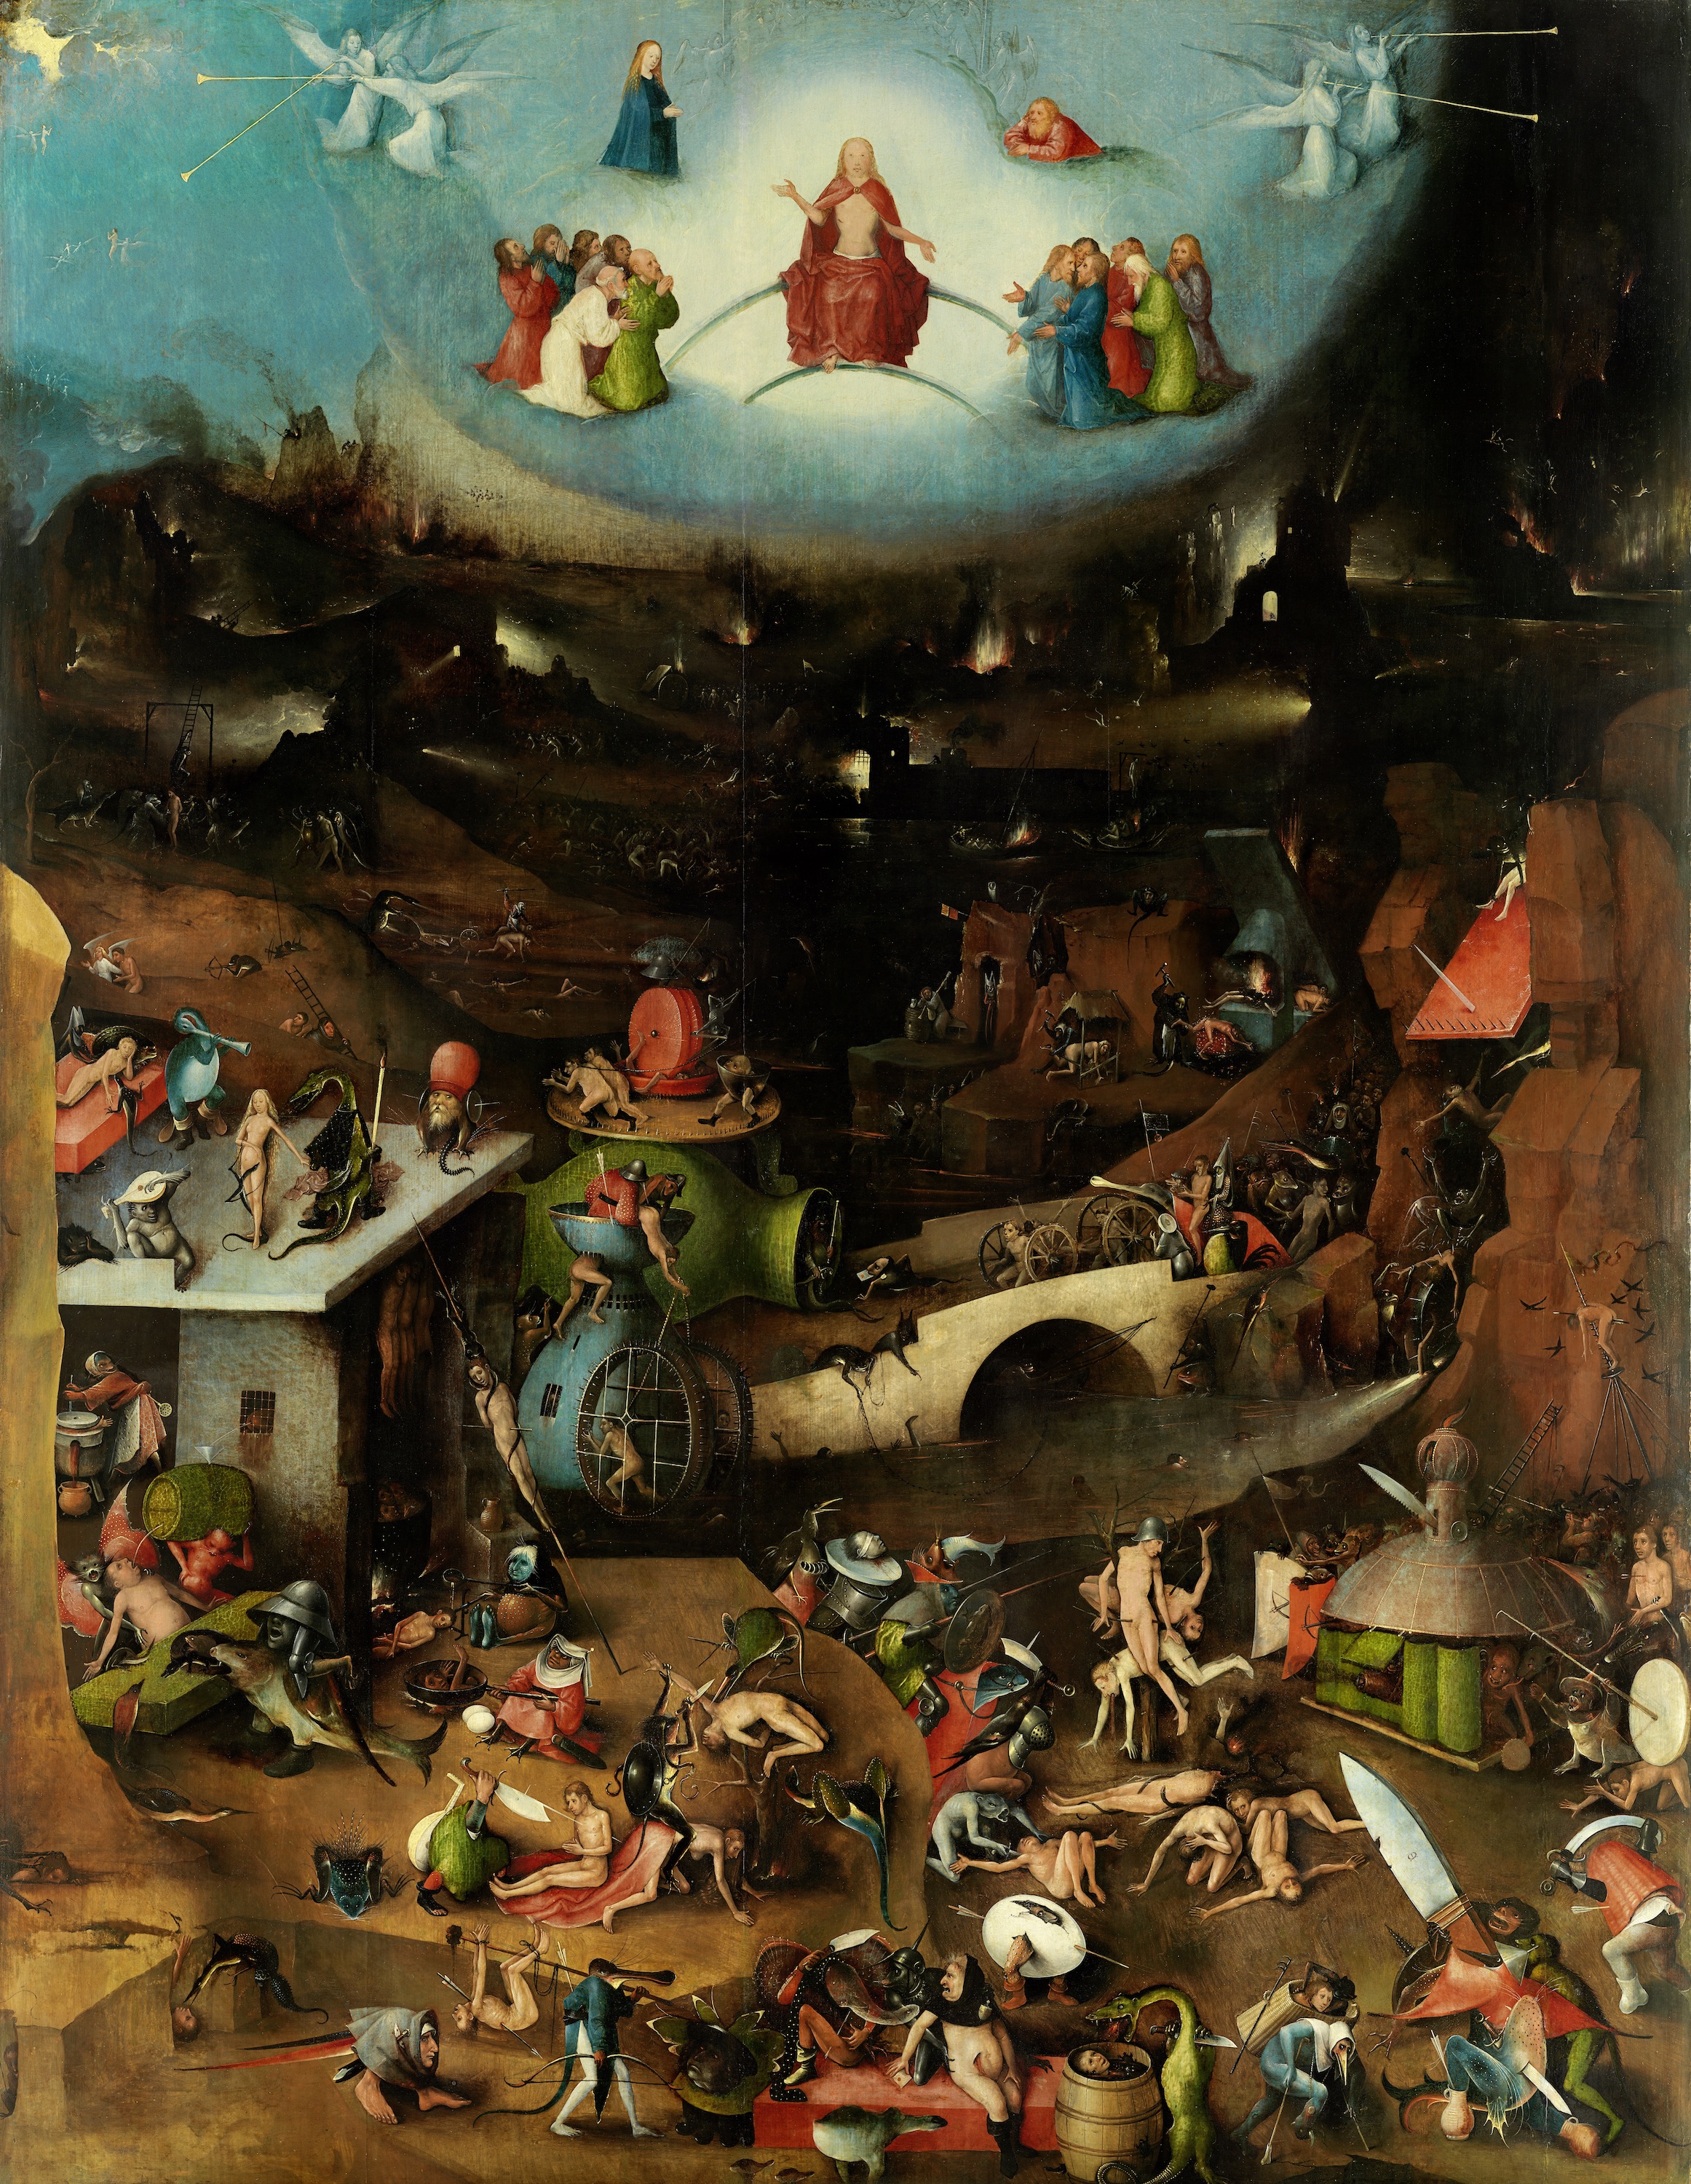 「最後の審判」三連祭壇画の中央パネル by Hieronymus Bosch - 1500年頃 